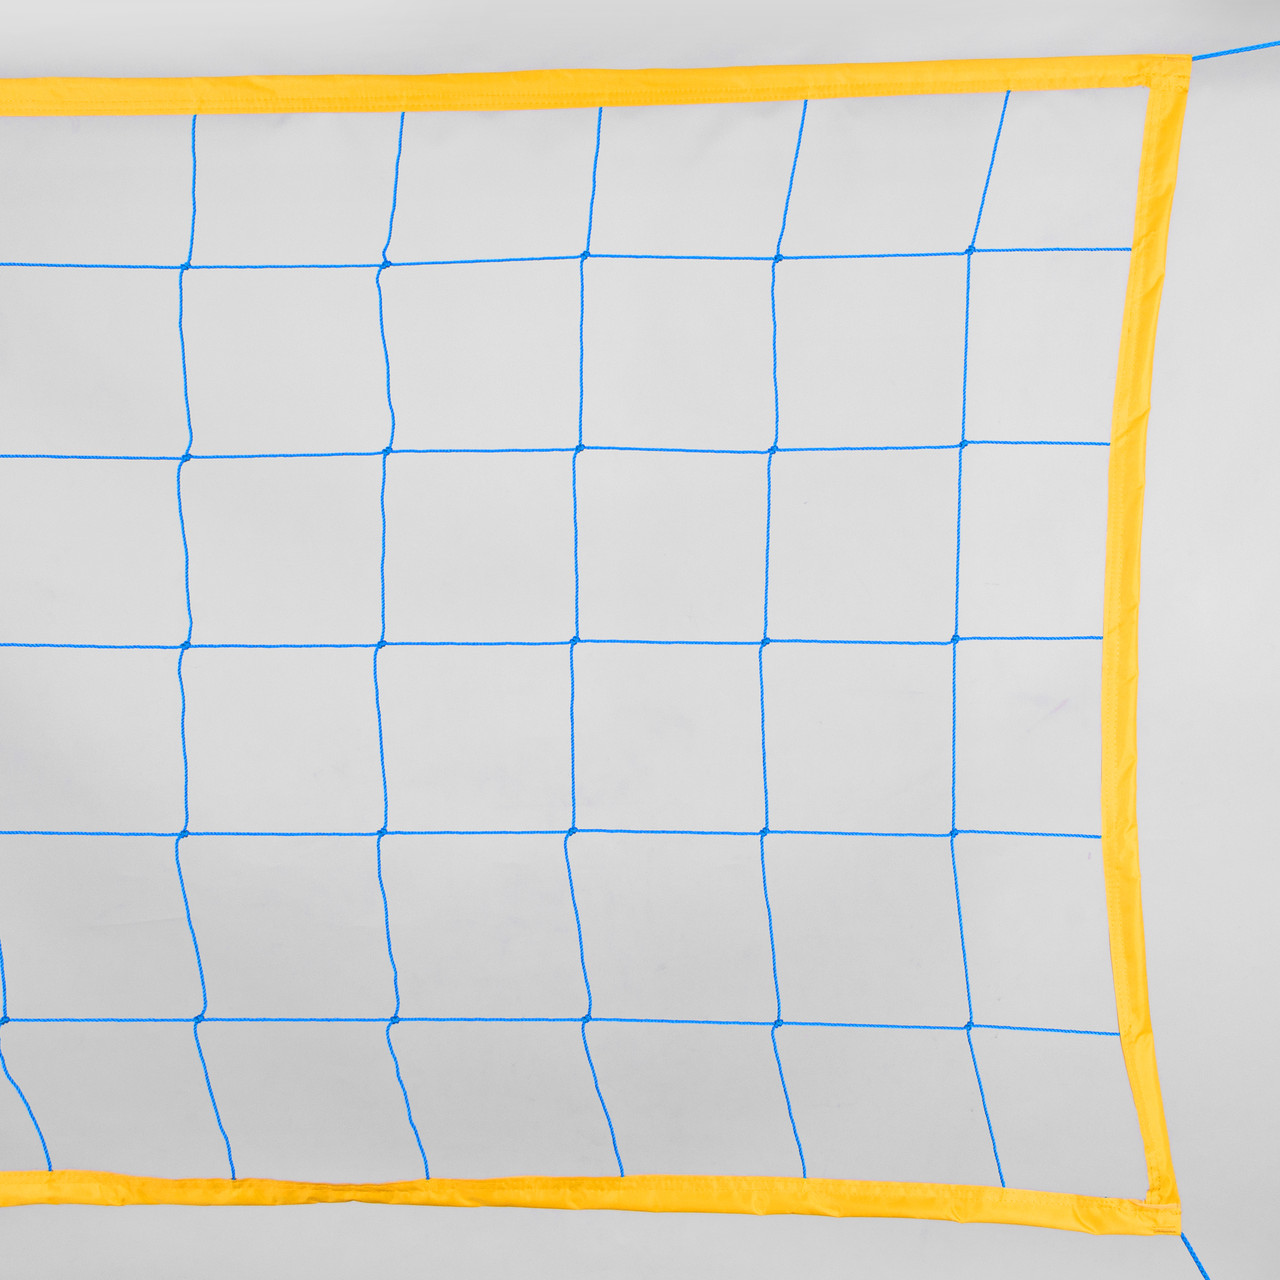 Сітка волейбольна «China model norma 69» жовто-синя, фото 1